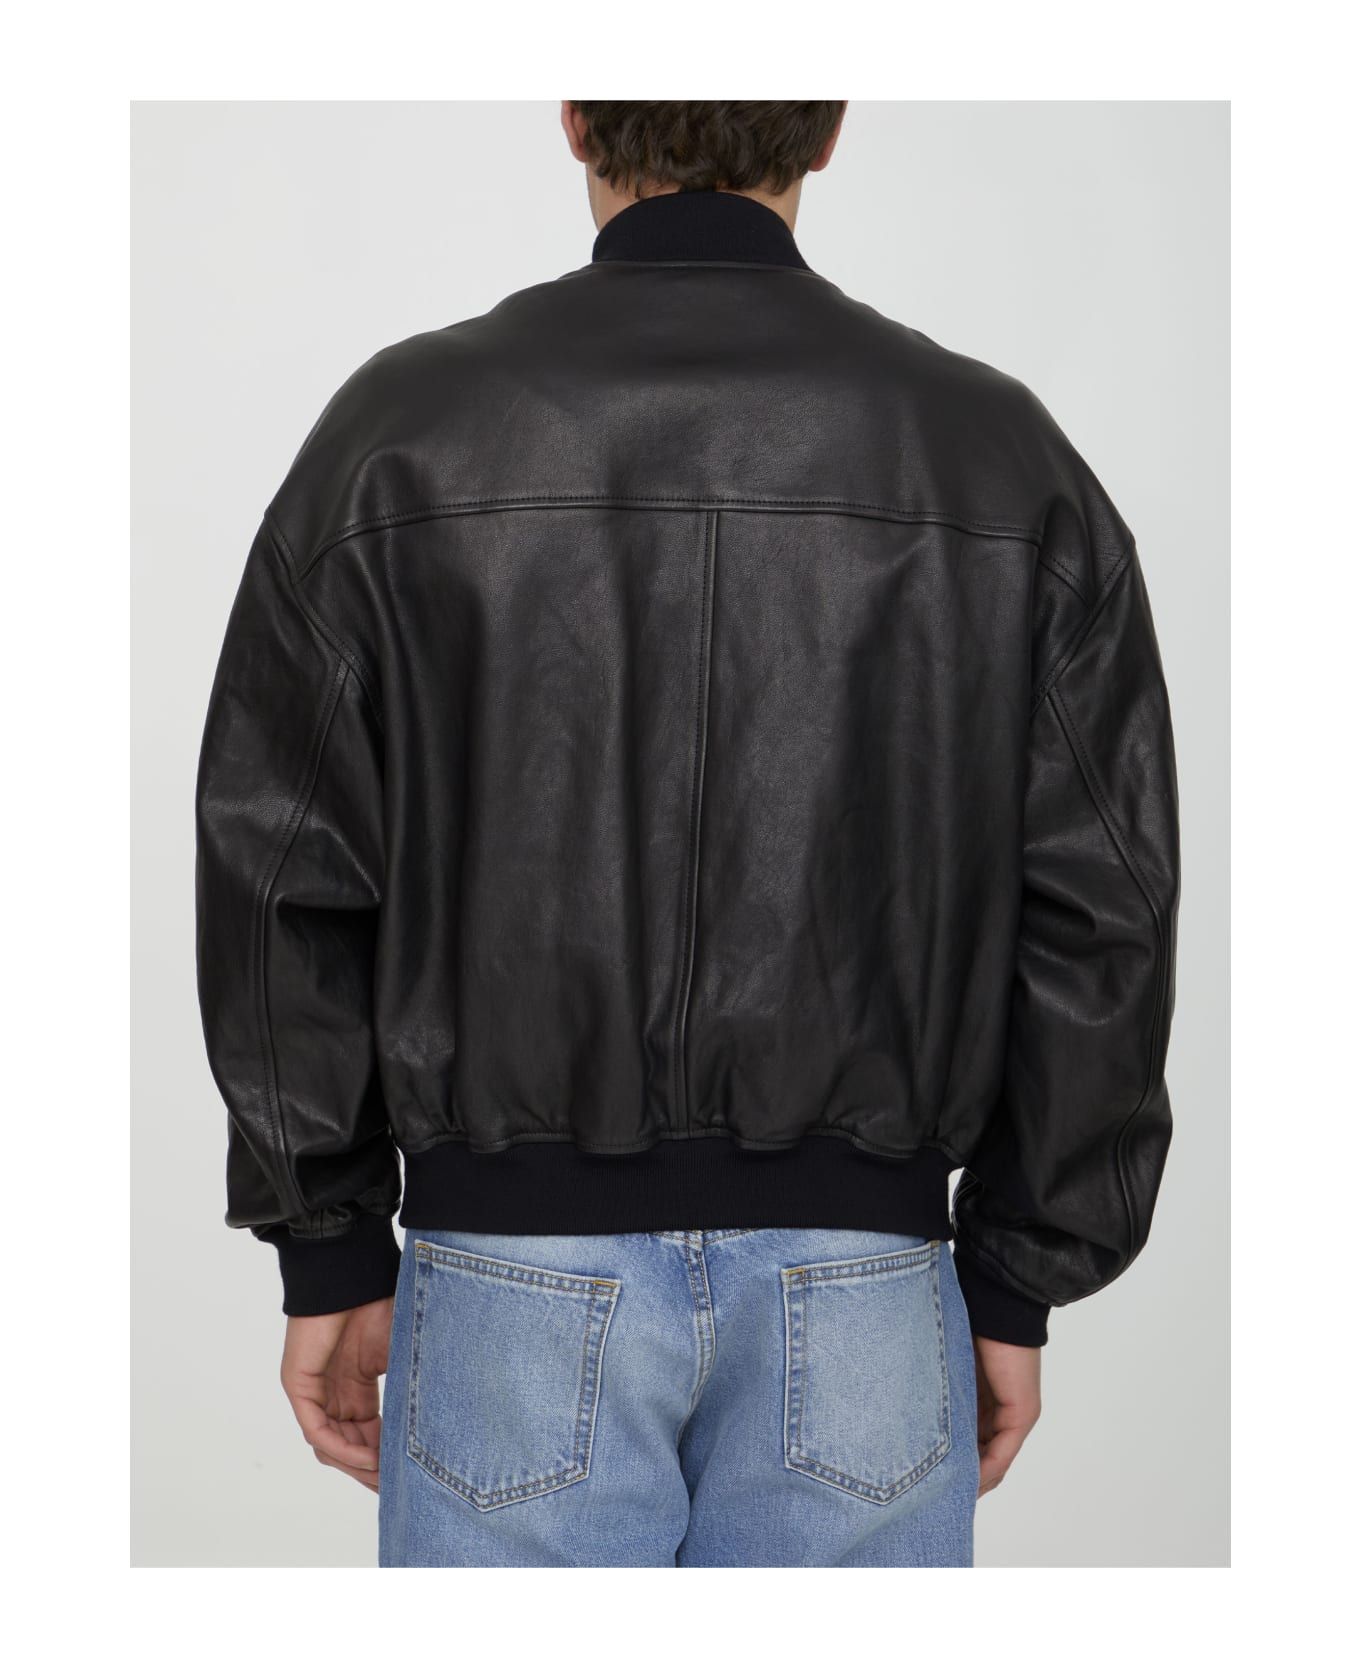 Dolce & Gabbana Black Leather Bomber Jacket - Nero